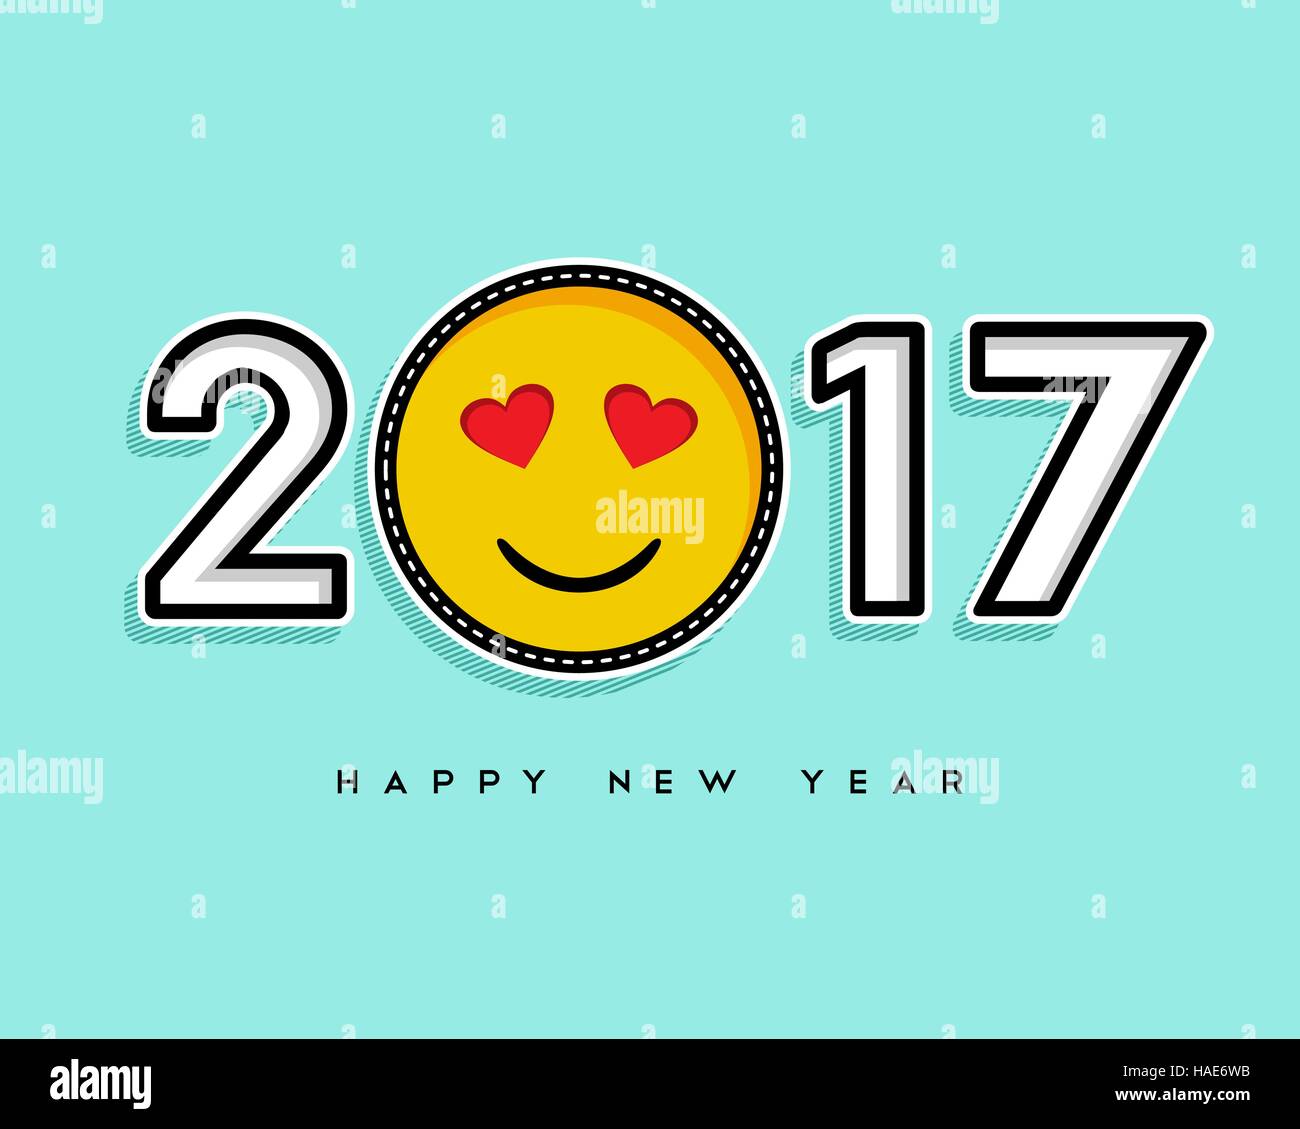 Glücklich Neujahr 2017 Grußkarte Design mit trendigen Stich Patch Emoji Symbol als Zahl. EPS10 Vektor. Stock Vektor